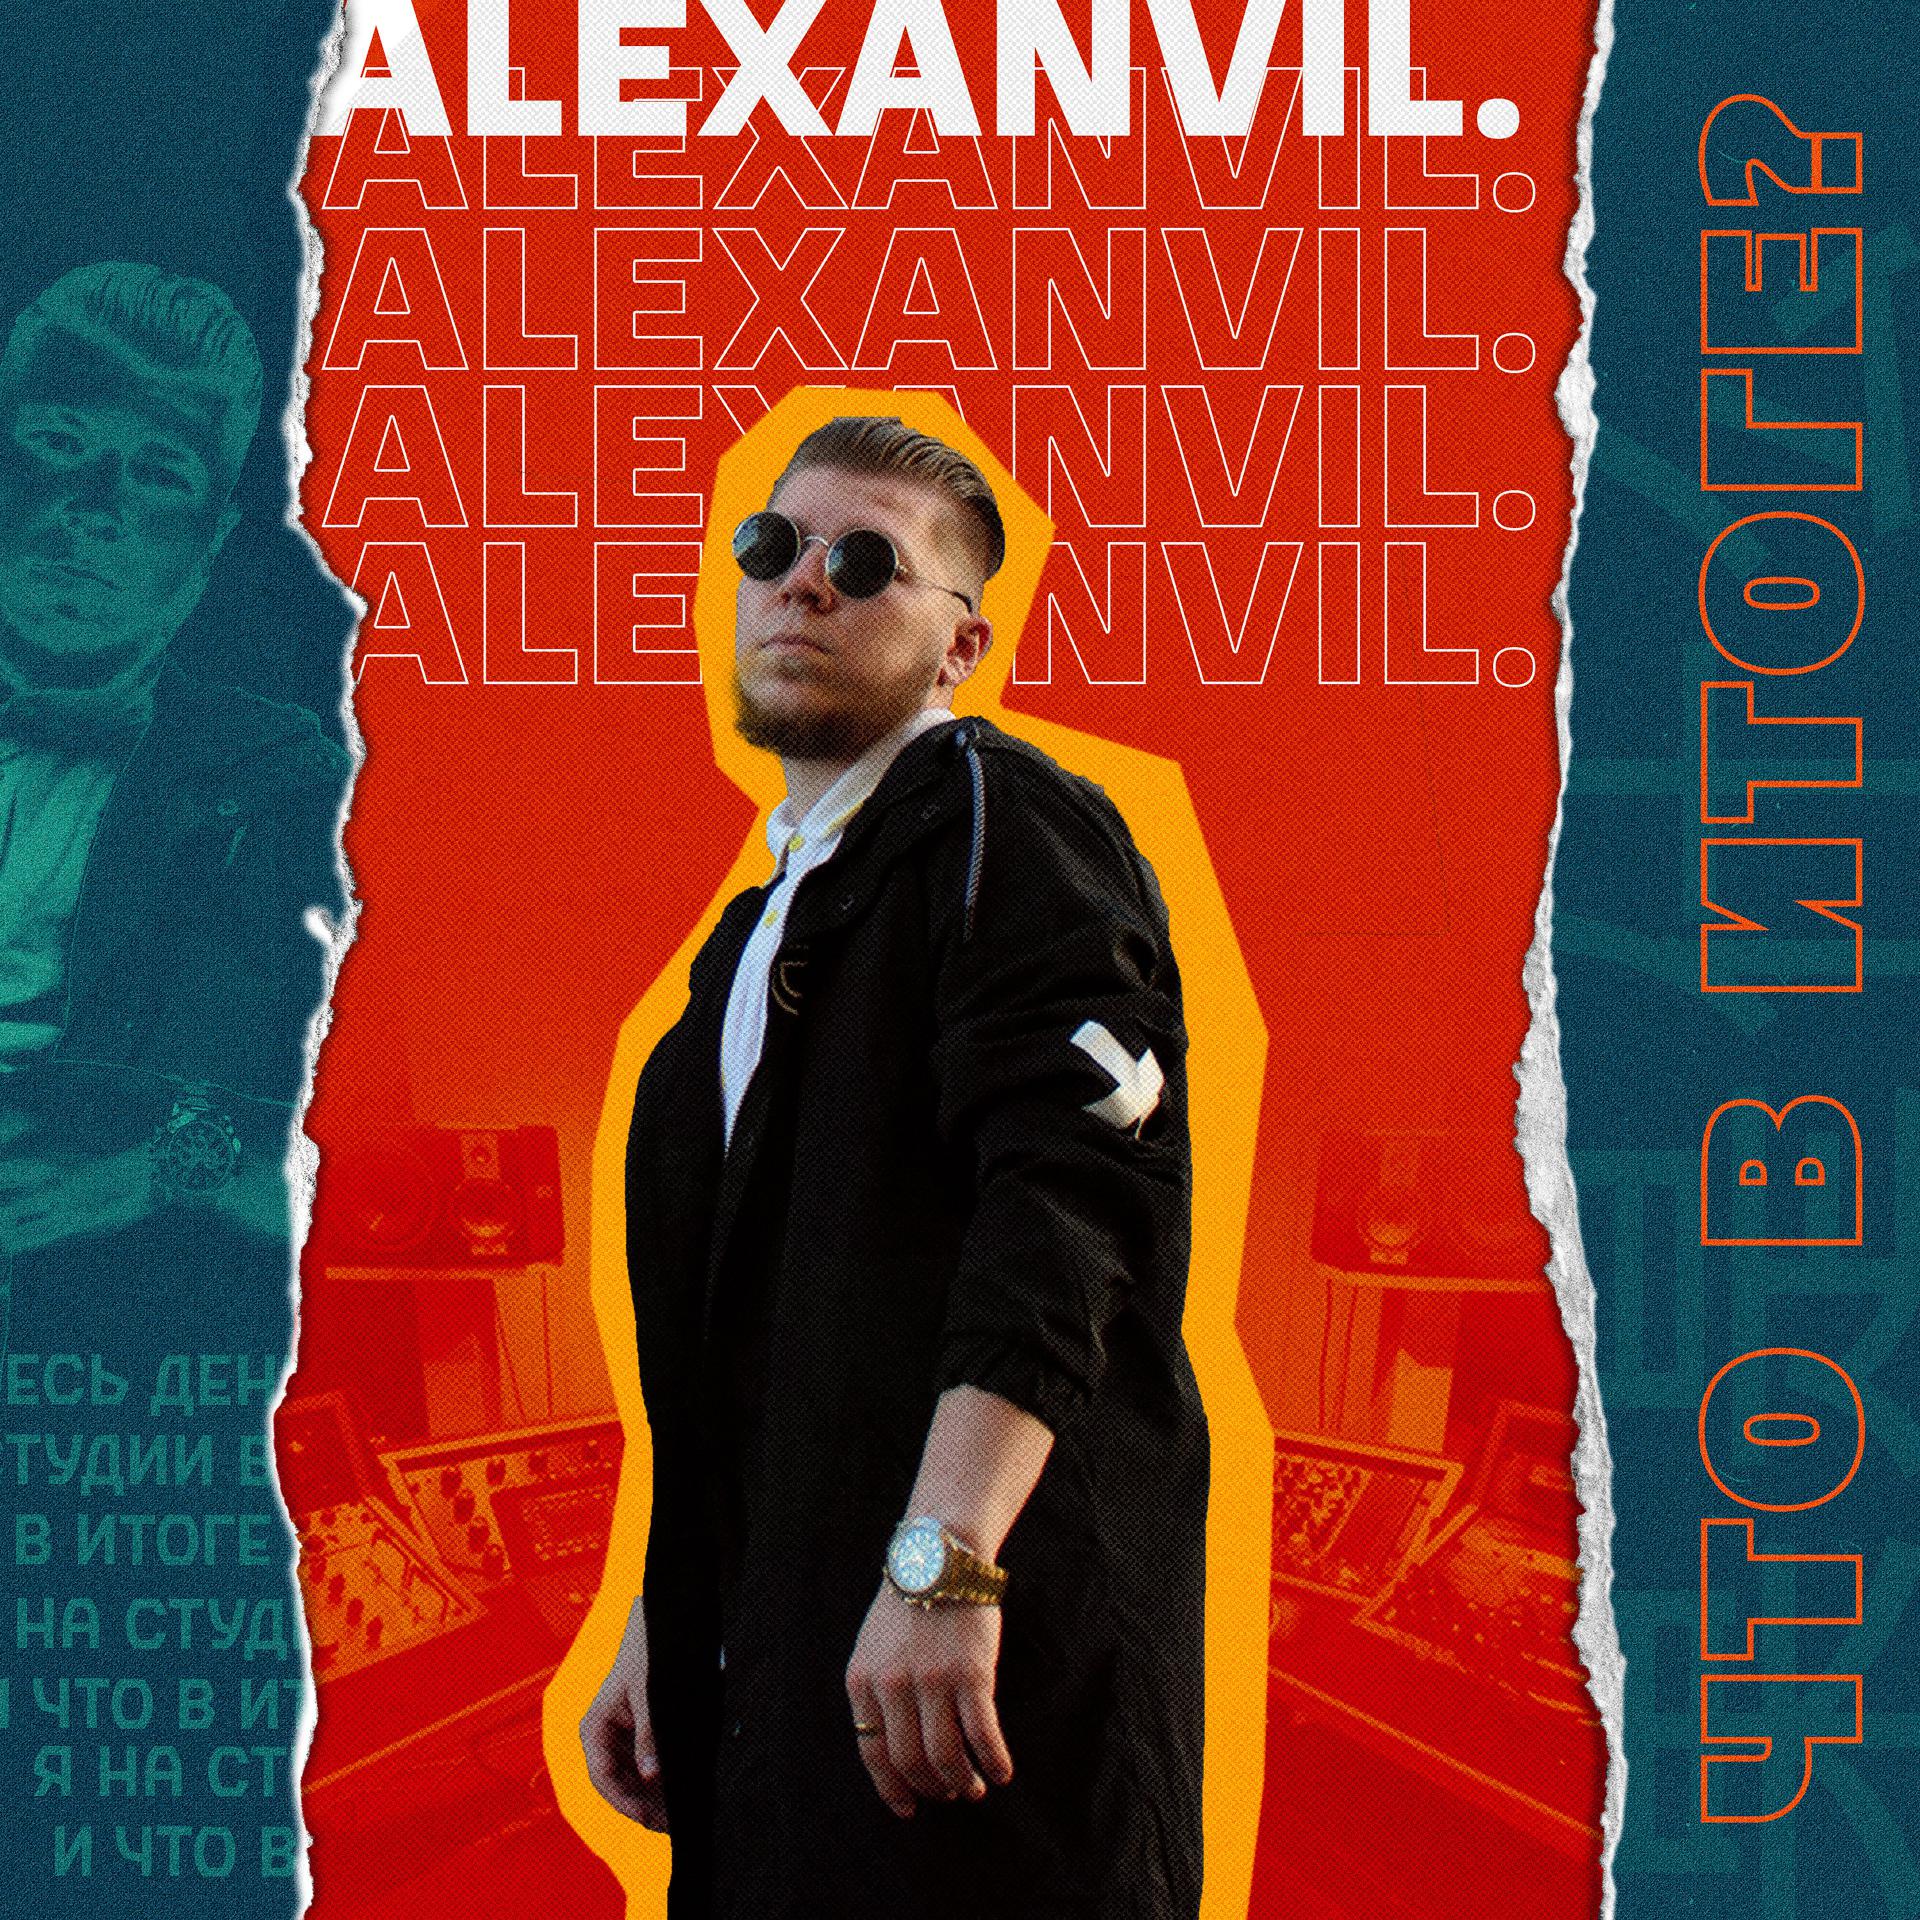 Постер к треку Alexanvil - Что в итоге?